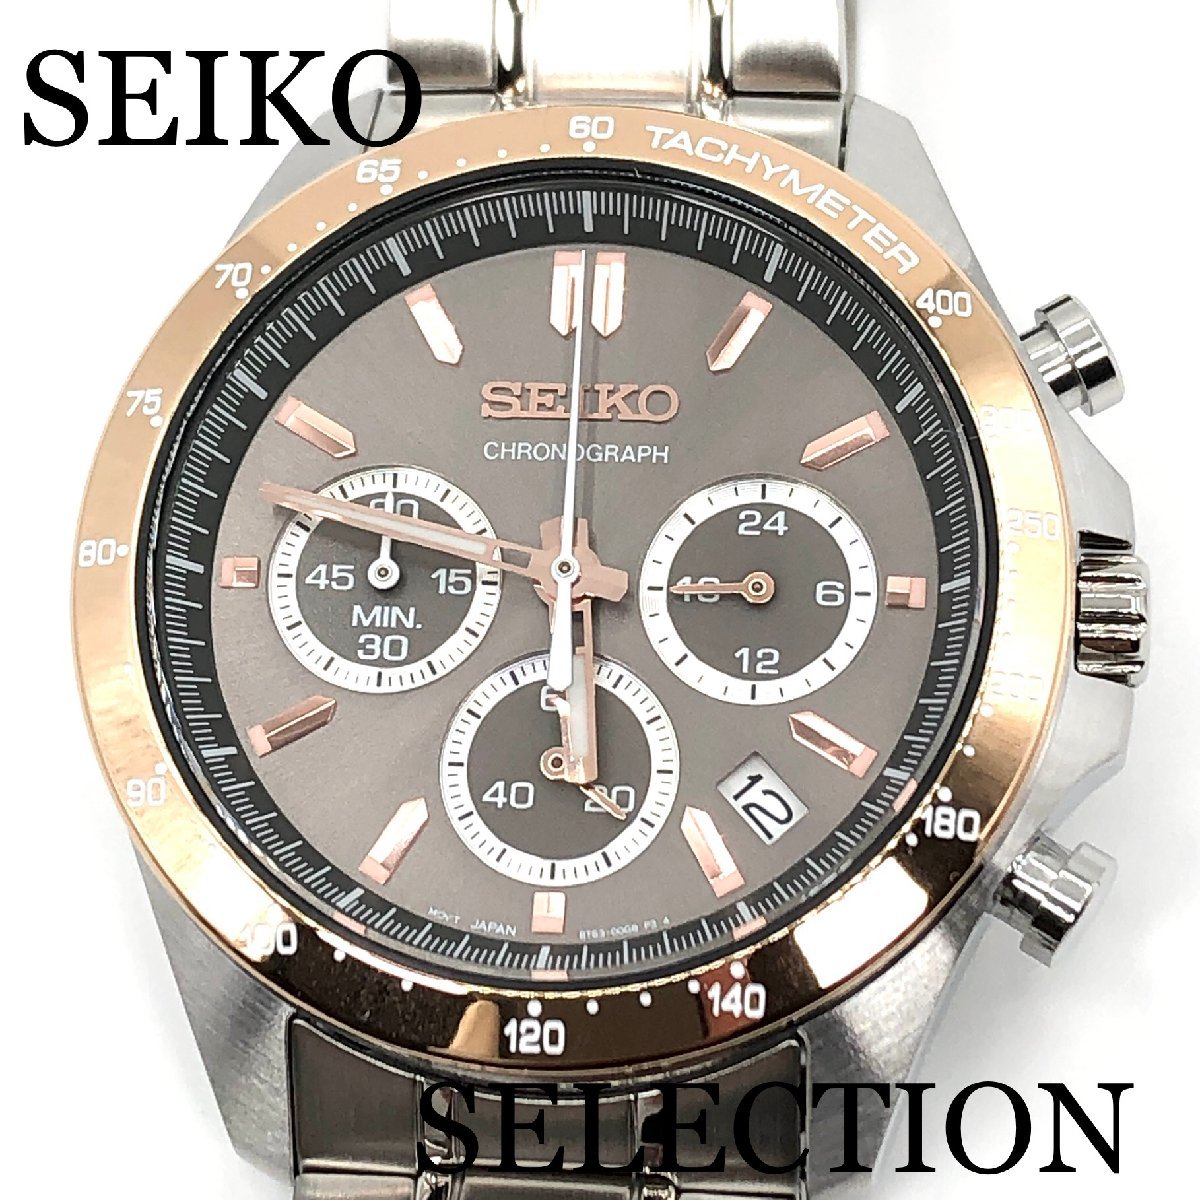 新品正規品『SEIKO SELECTION』セイコー セレクション クロノグラフ 腕時計 メンズ SBTR026【送料無料】_画像1